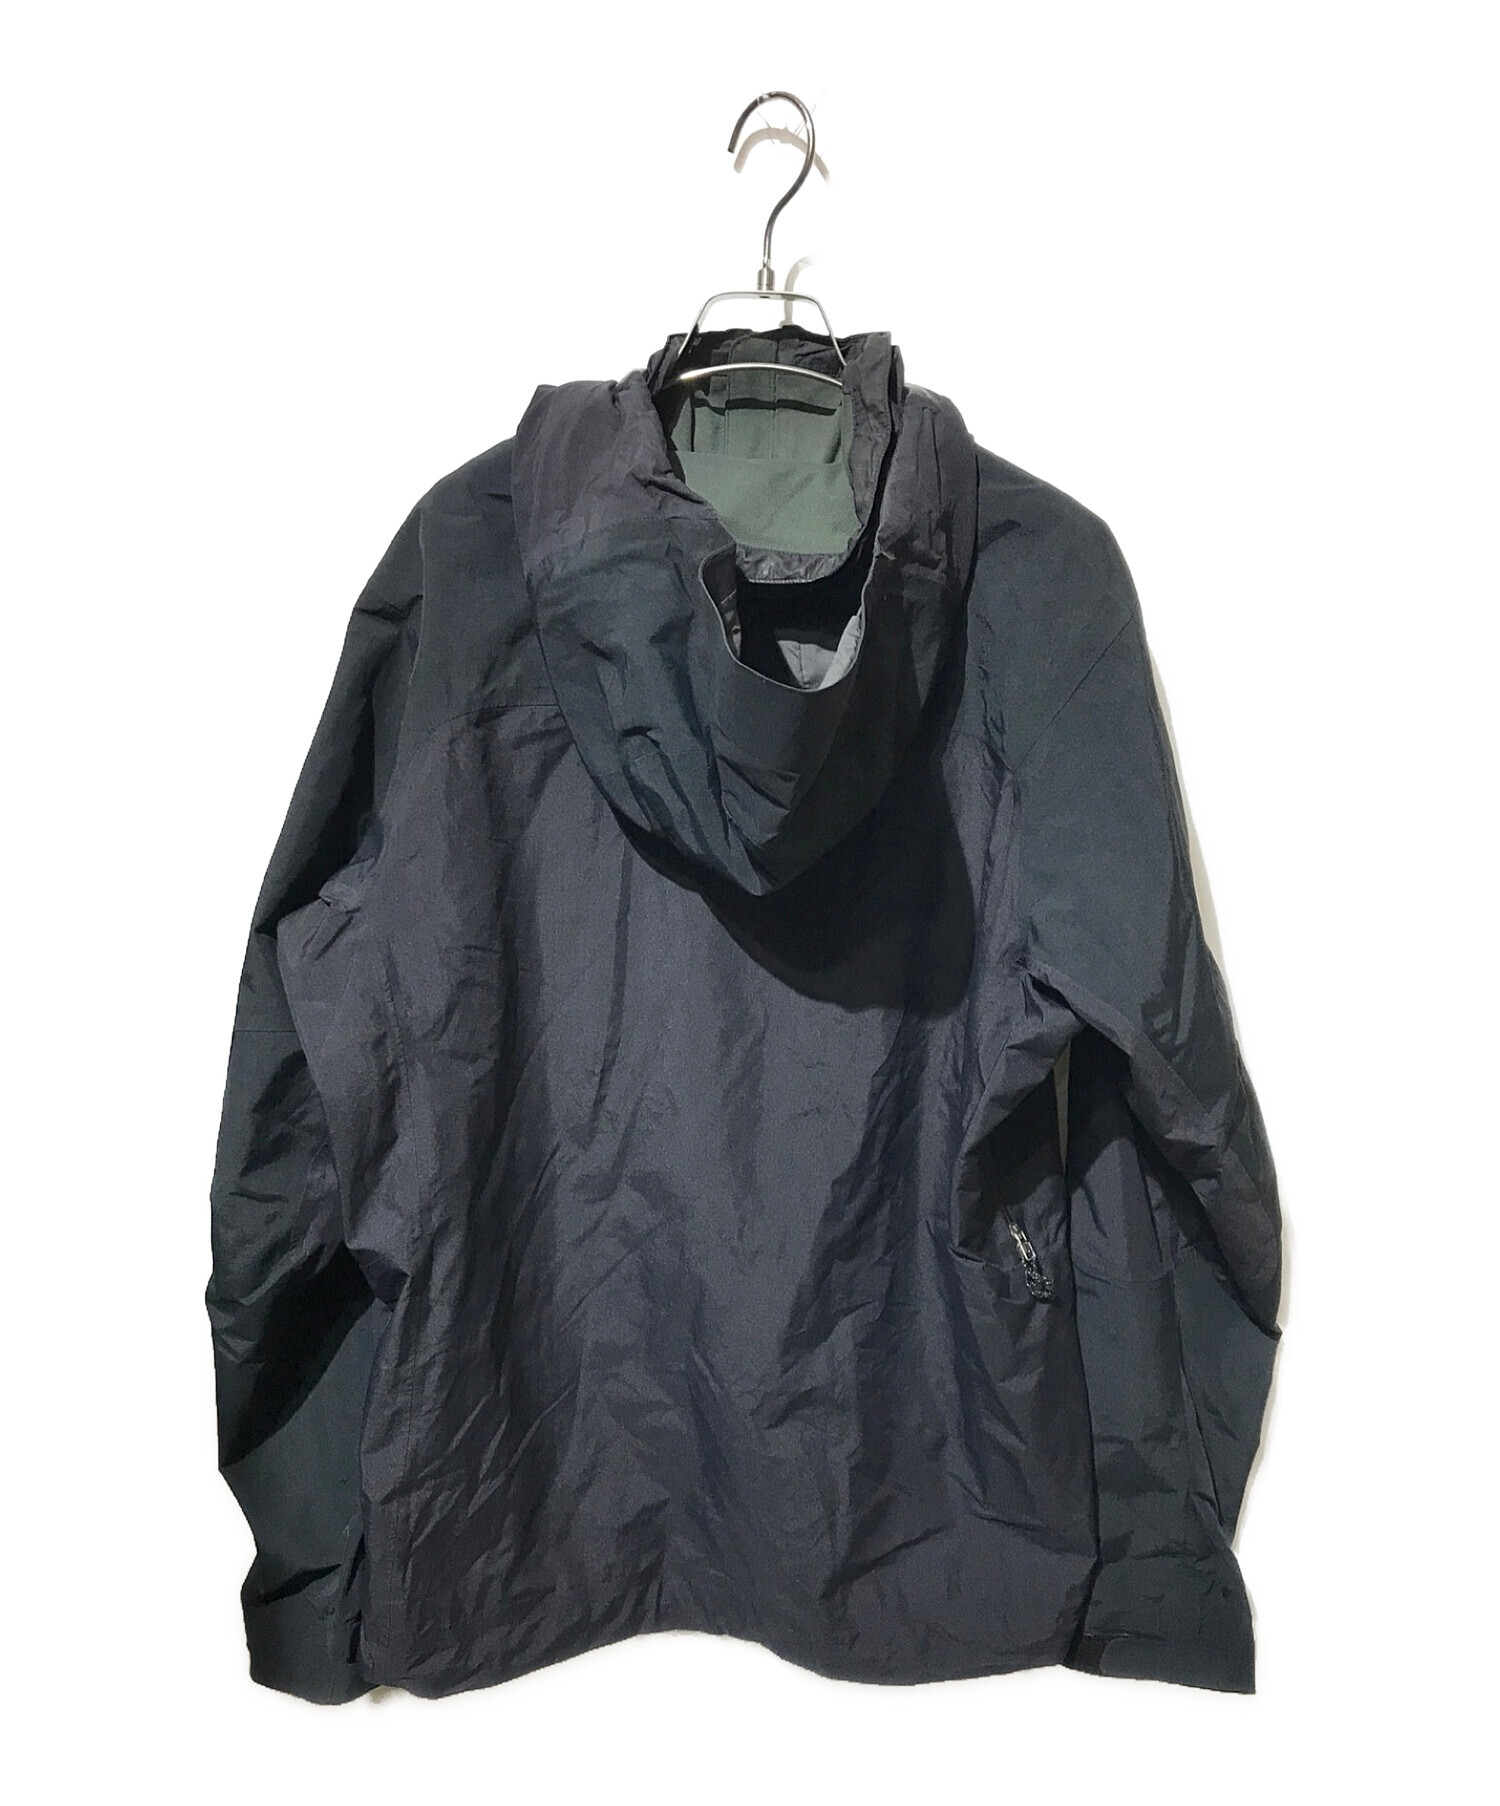 Patagonia (パタゴニア) ピオレットジャケット ゴアテックス マウンテンパーカー ブラック サイズ:M